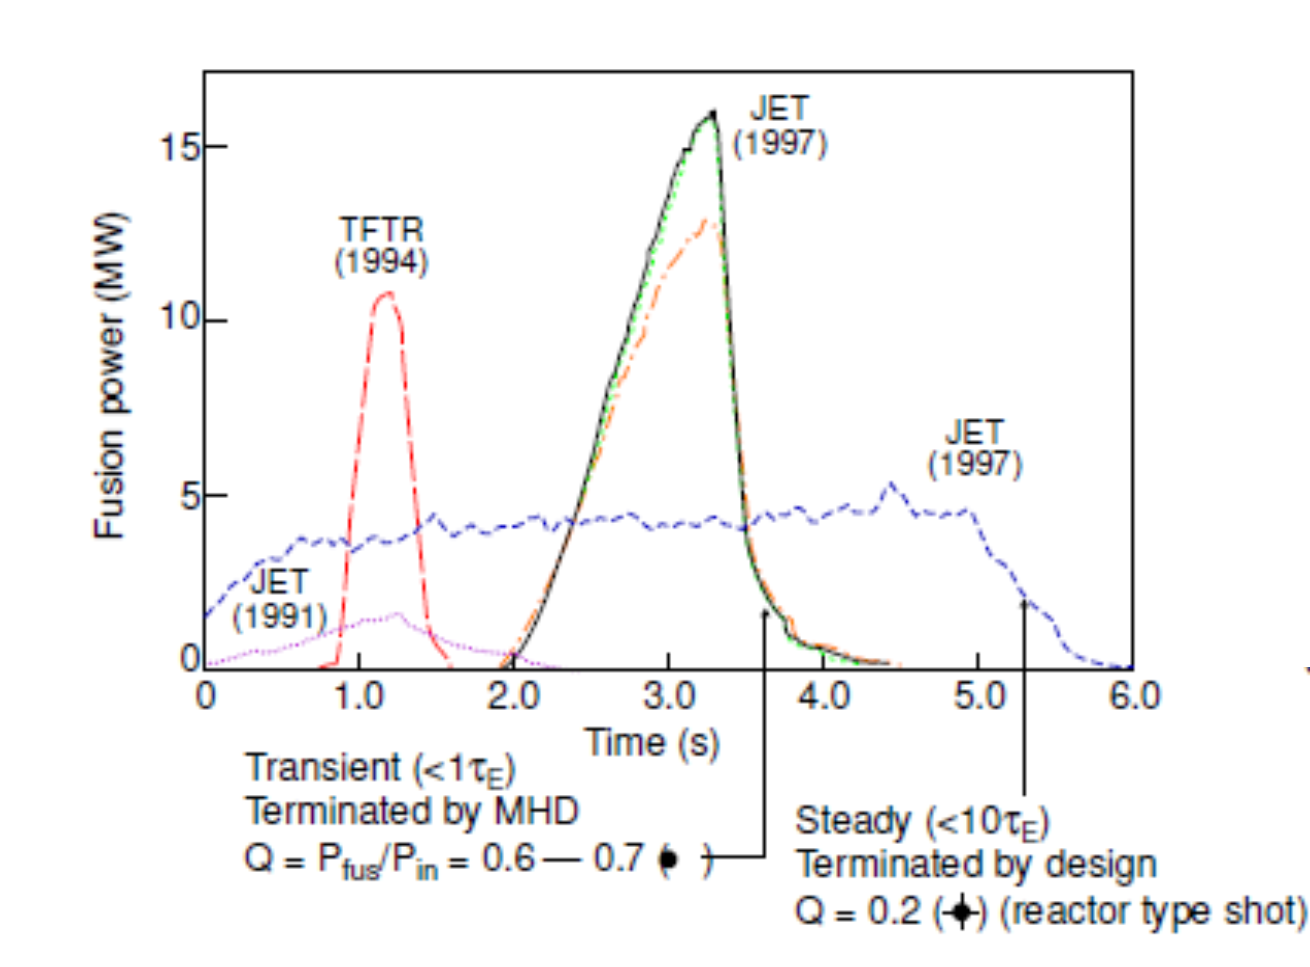 Rekordní výstřely, které se na tokamaku JET realizovaly v roce 1997. U prvního se podařilo dosáhnout velmi vysokého výkonu 15 MW, ale kratší doba udržen. U druhého bylo plazma stabilní a vydrželo po celou dobu 5 sekund. V grafu je i výstřel realizovaný na americkém zařízení TFTR v roce 1994. (Zdroj prezentace D. Storka). 